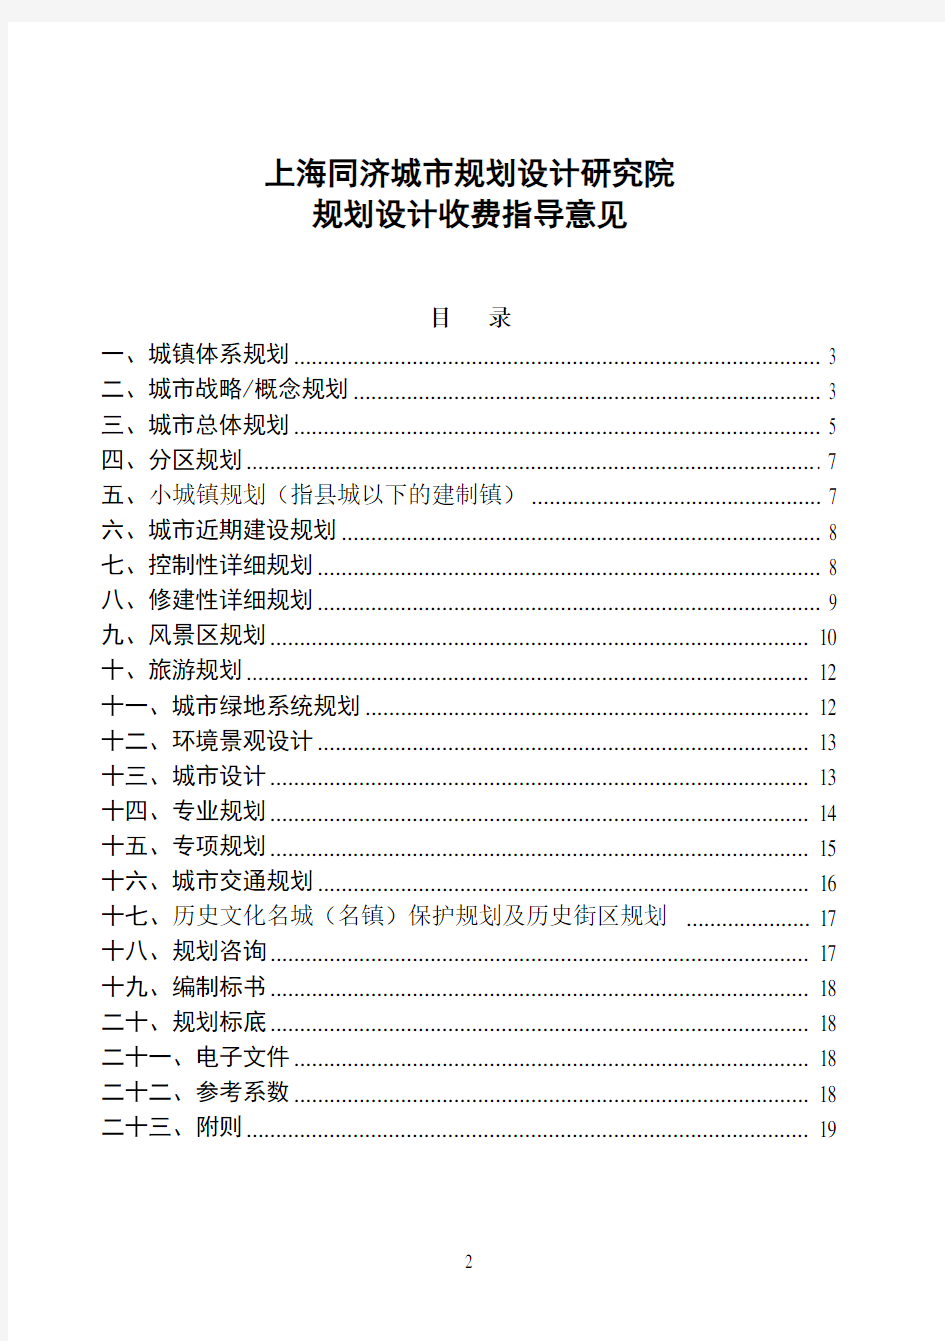 上海同济城市规划设计研究院-收费指导意见20080723